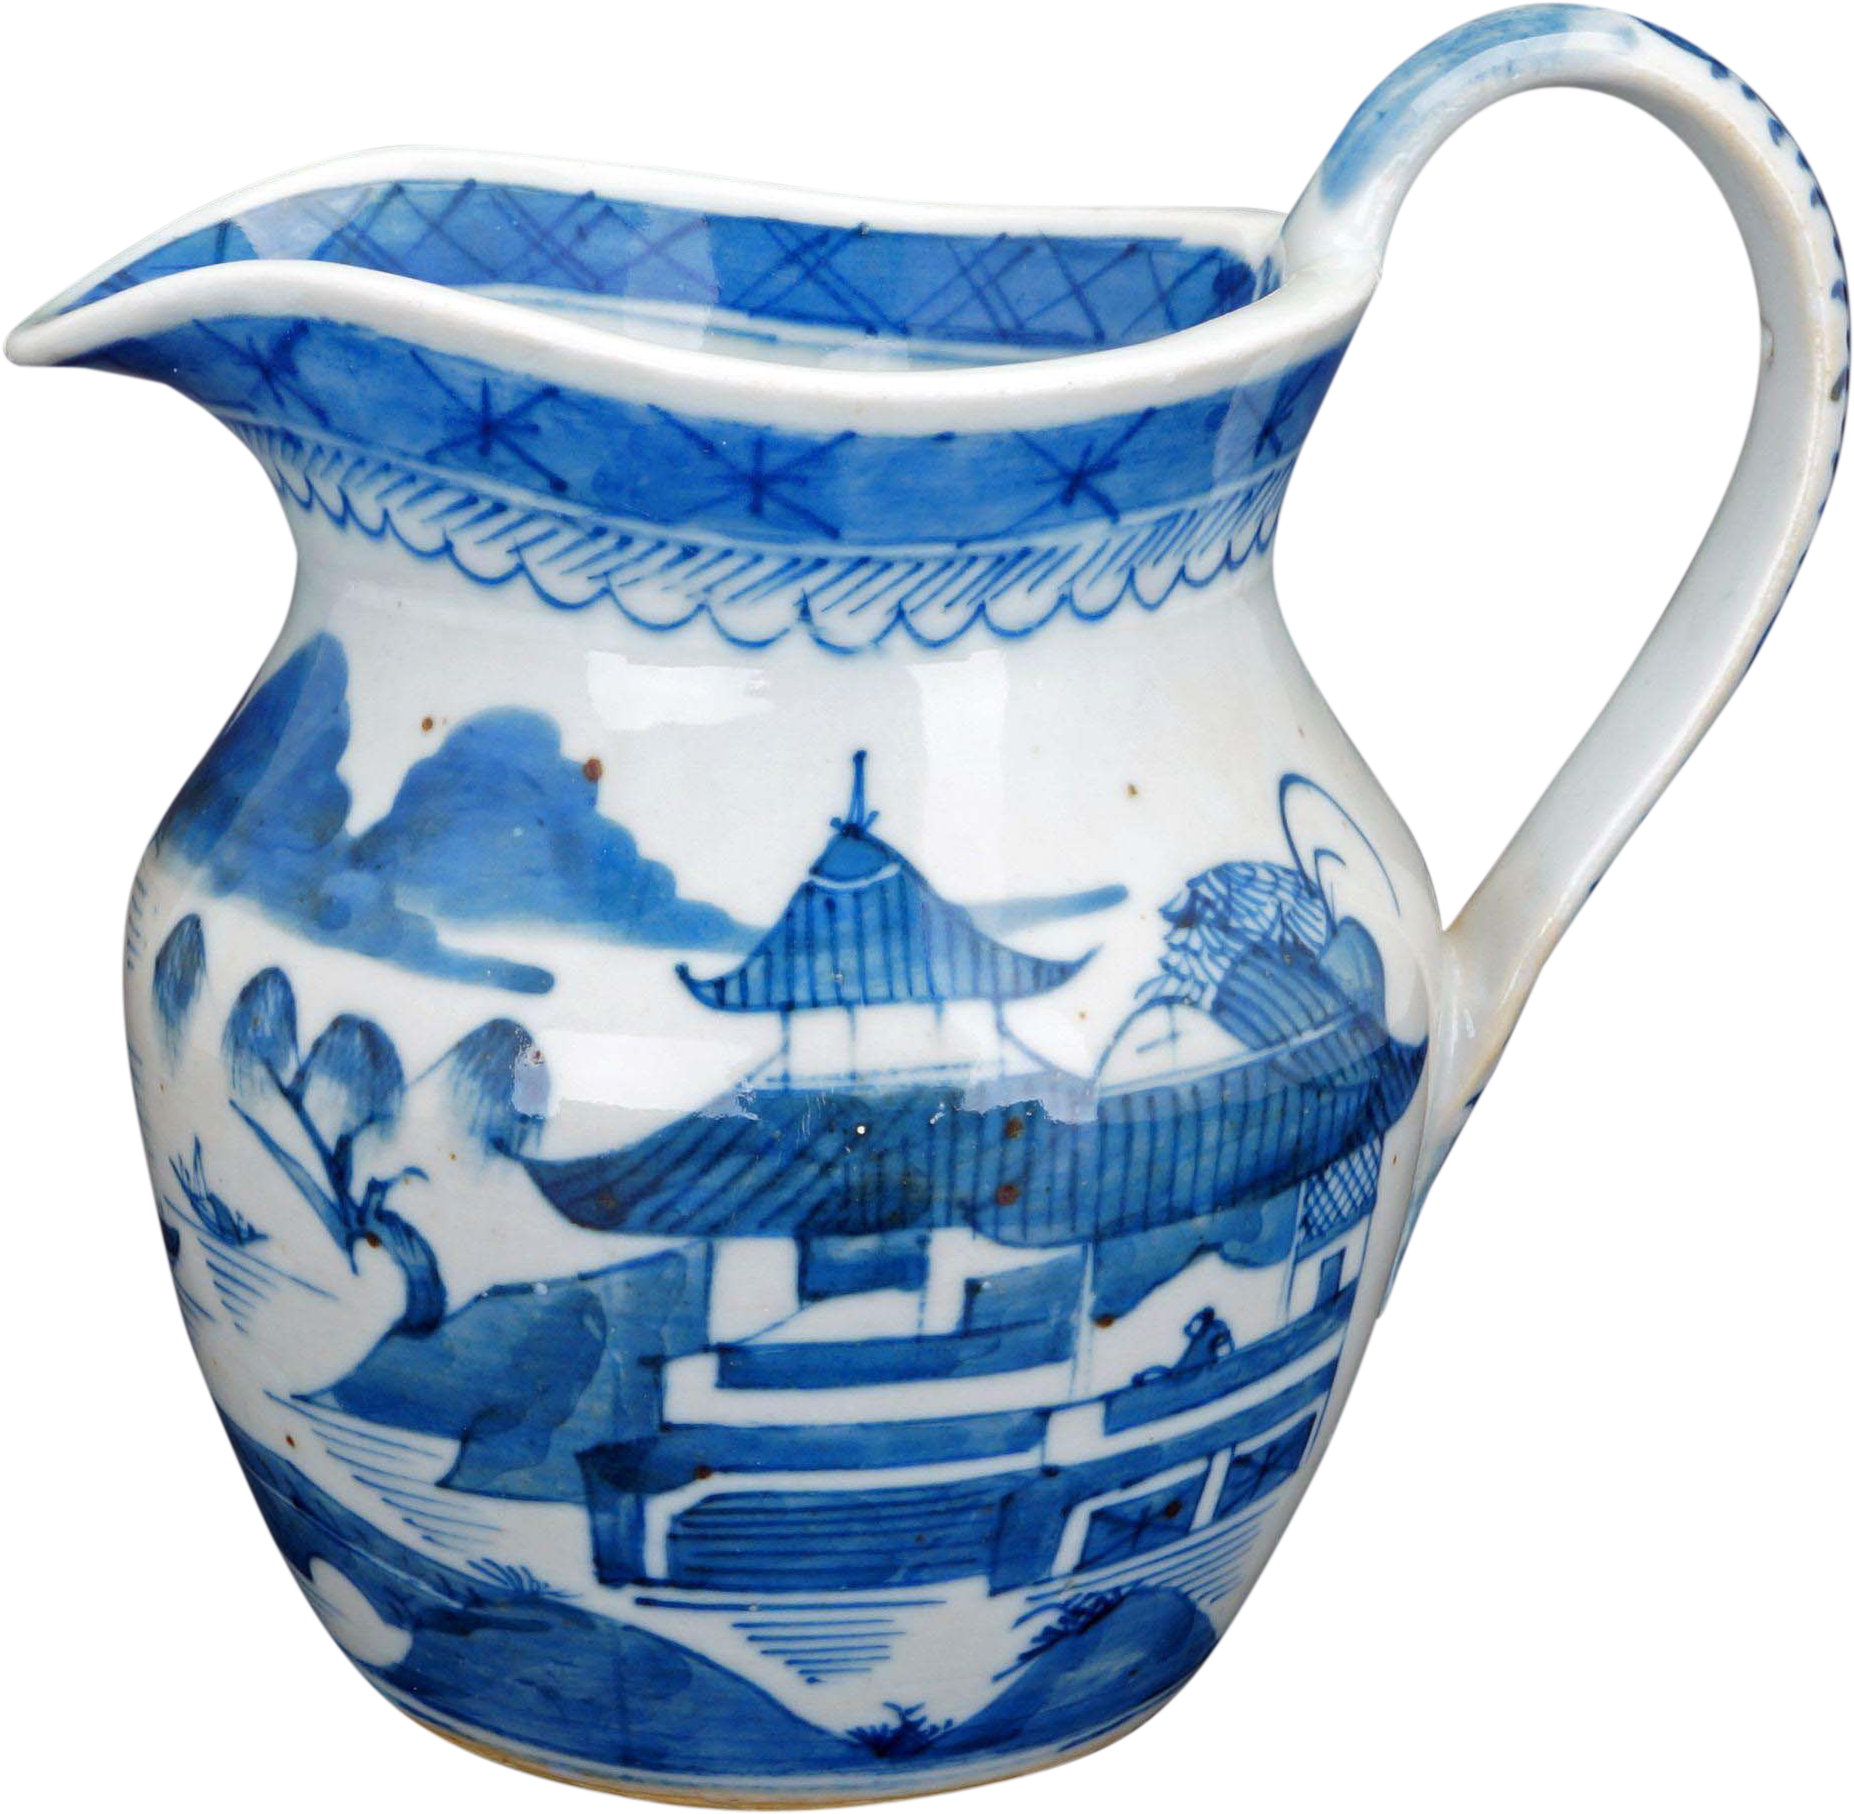 Milchkännchen aus blau-weißer Keramik